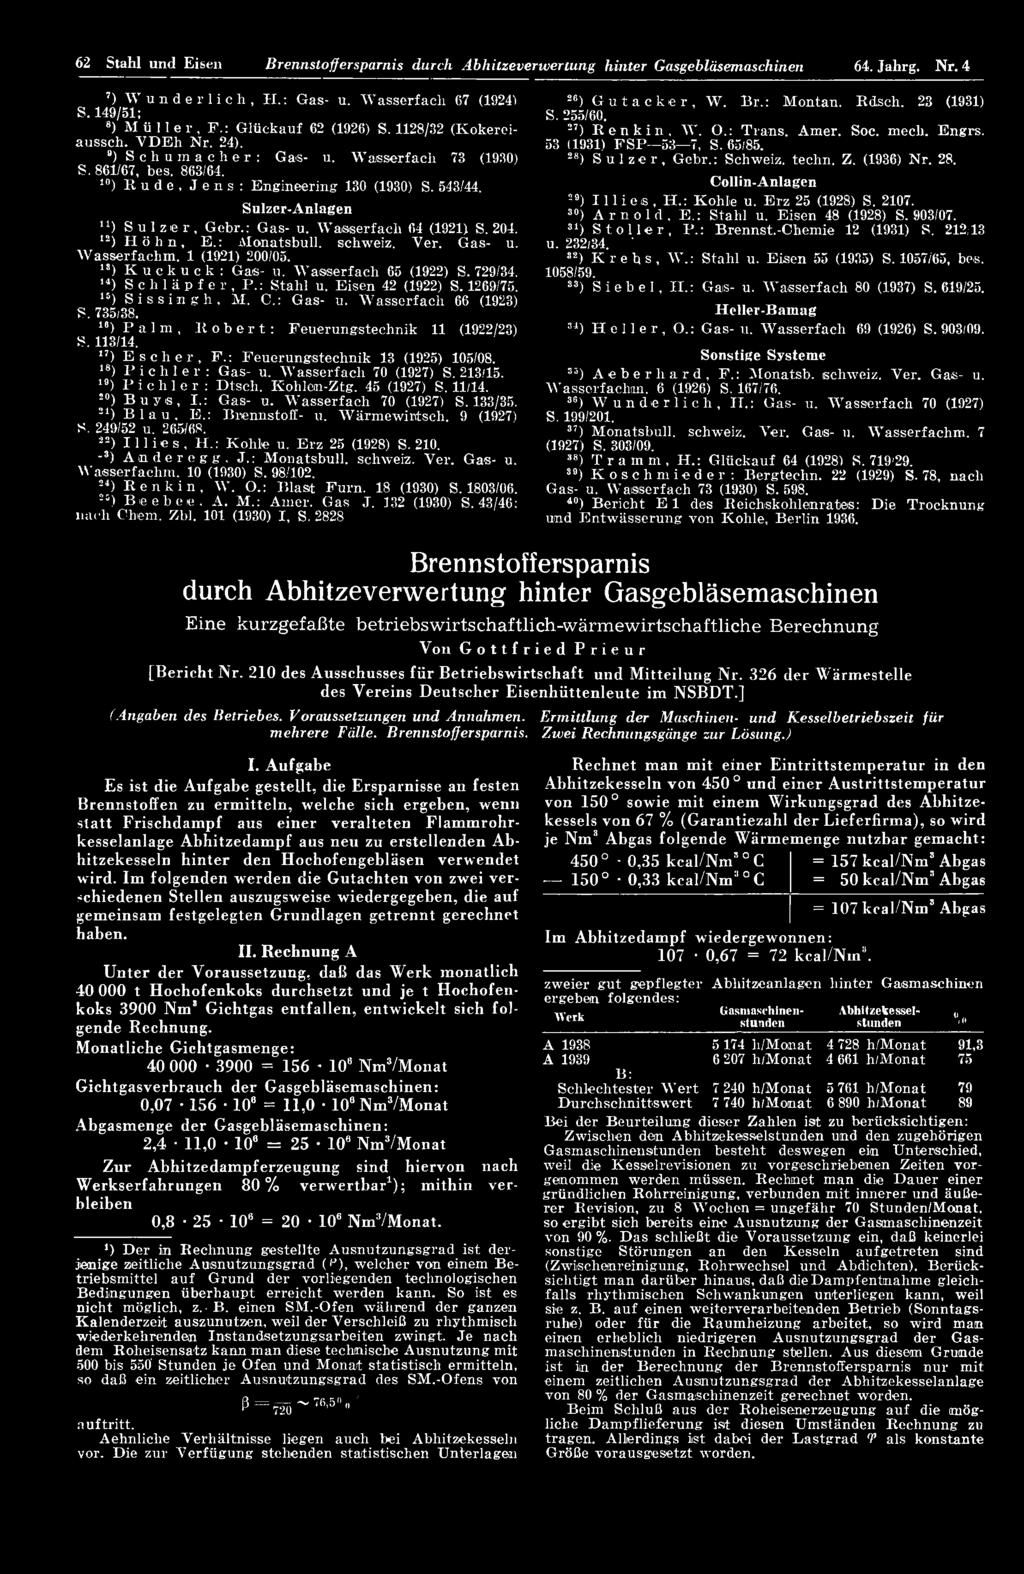 ") Escher, F.: Feuerungstechnik 13 (1925) 105/08. 1S) Pichler: Gas- u. W asserfach 70 (1927) S. 213/15. 19) Pichler: Dtsch. Kohlein-Ztg. 45 (1927) S. 11/14. 20) Buys, I.: Gas- u. W asserfach 70 (1927) S. 133/35.